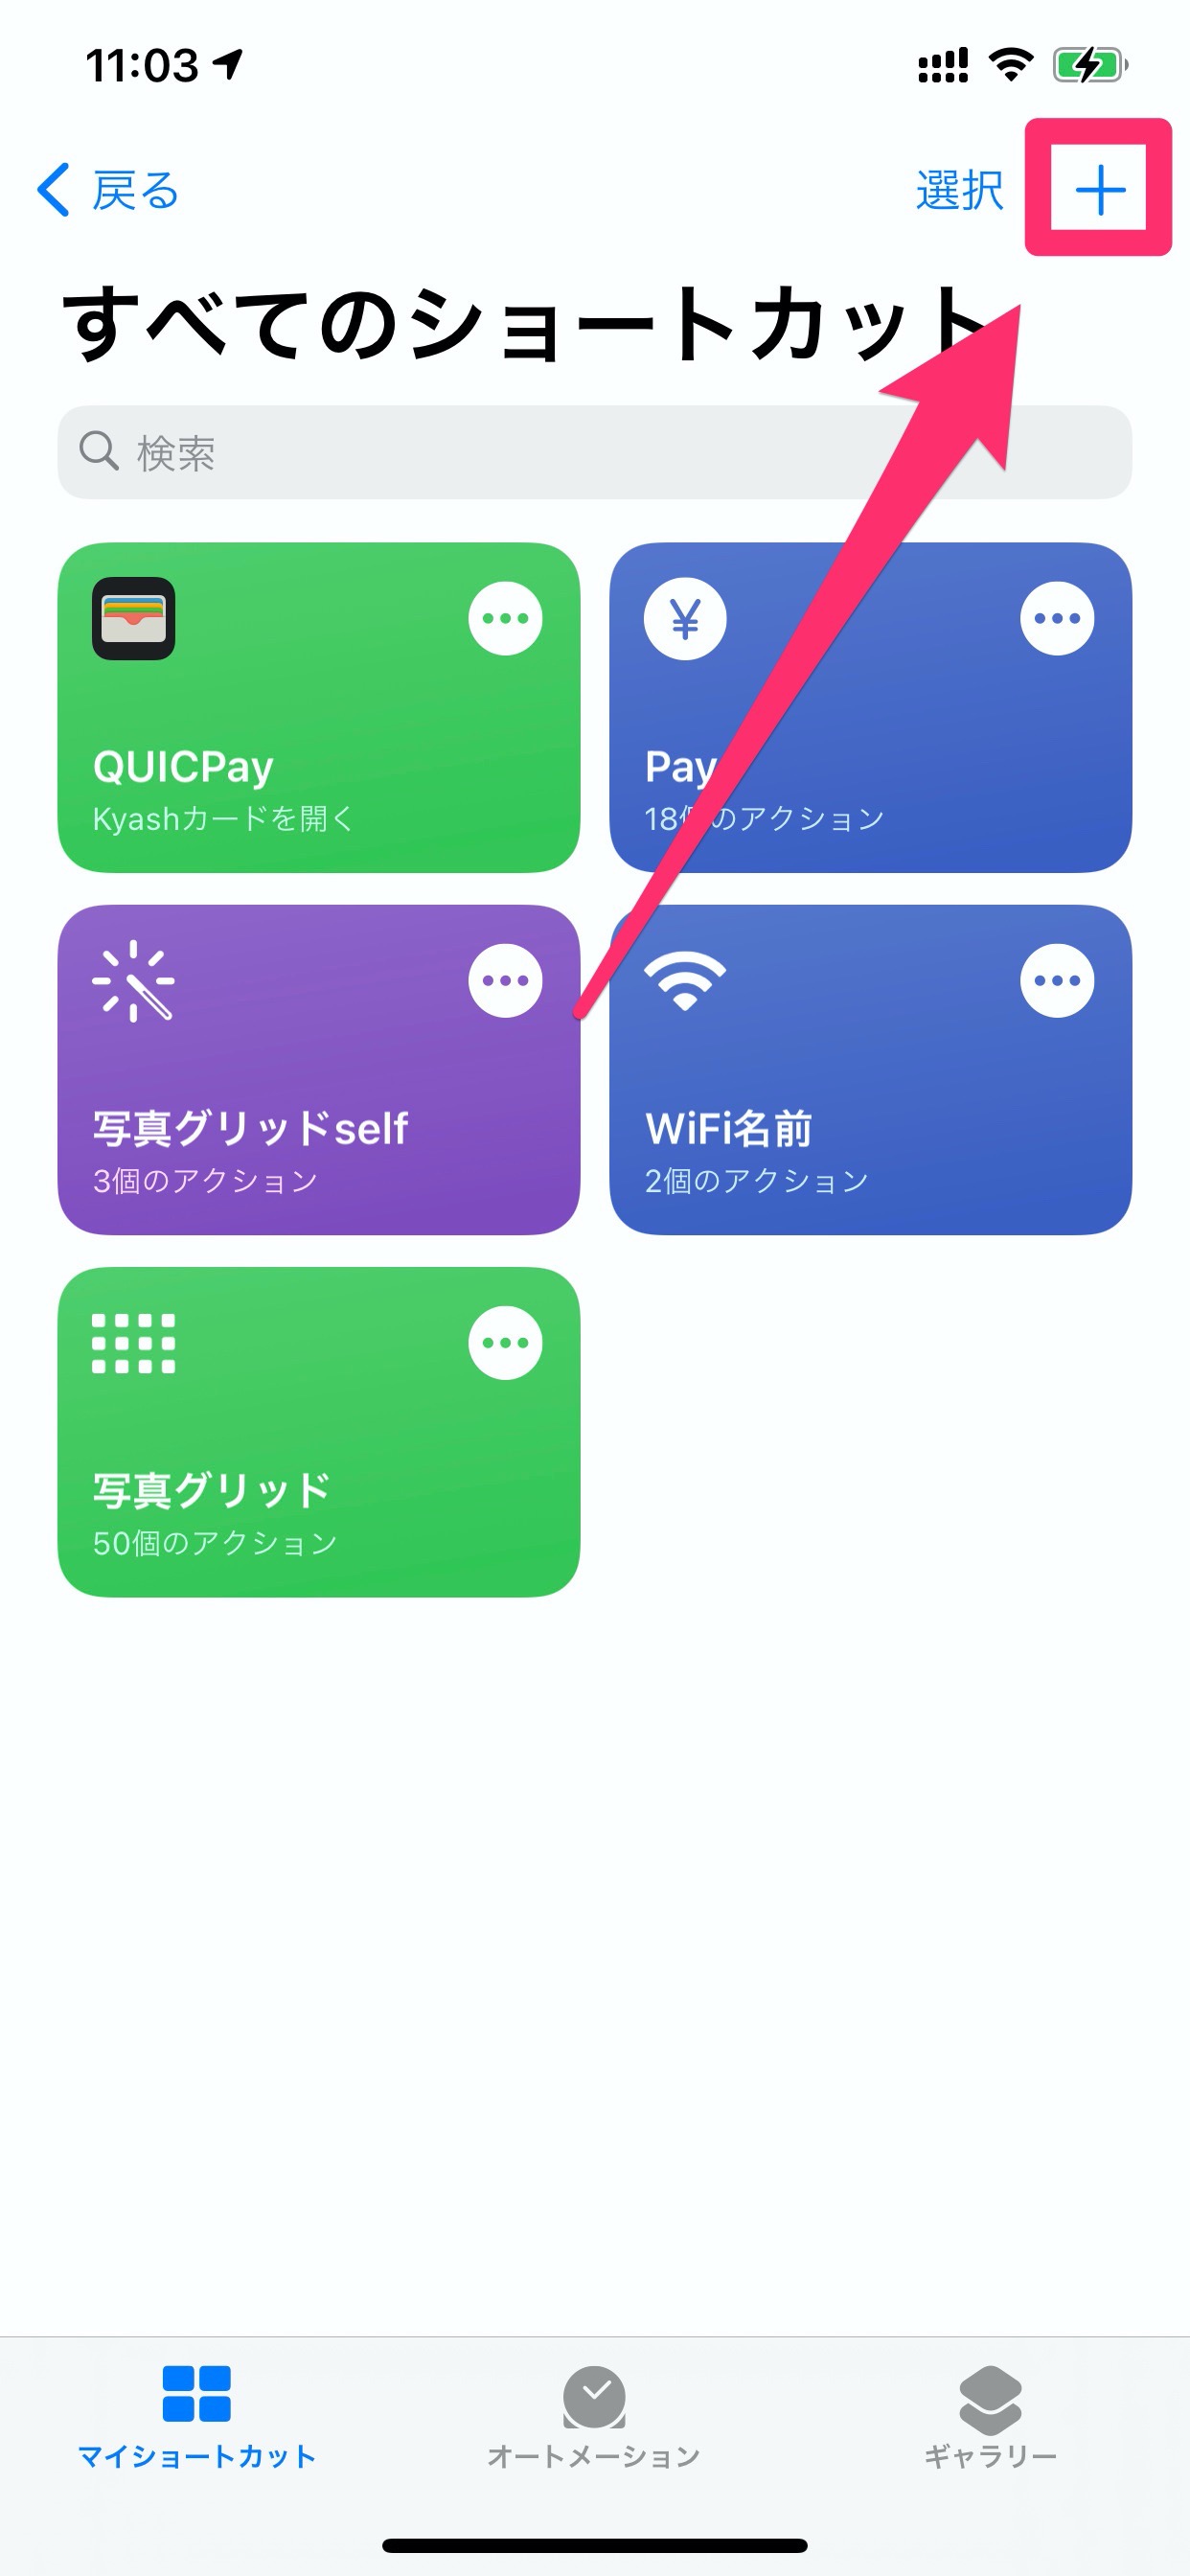 Iphone ショートカット アプリで Payアプリを手軽に呼び出す方法 ネタフル